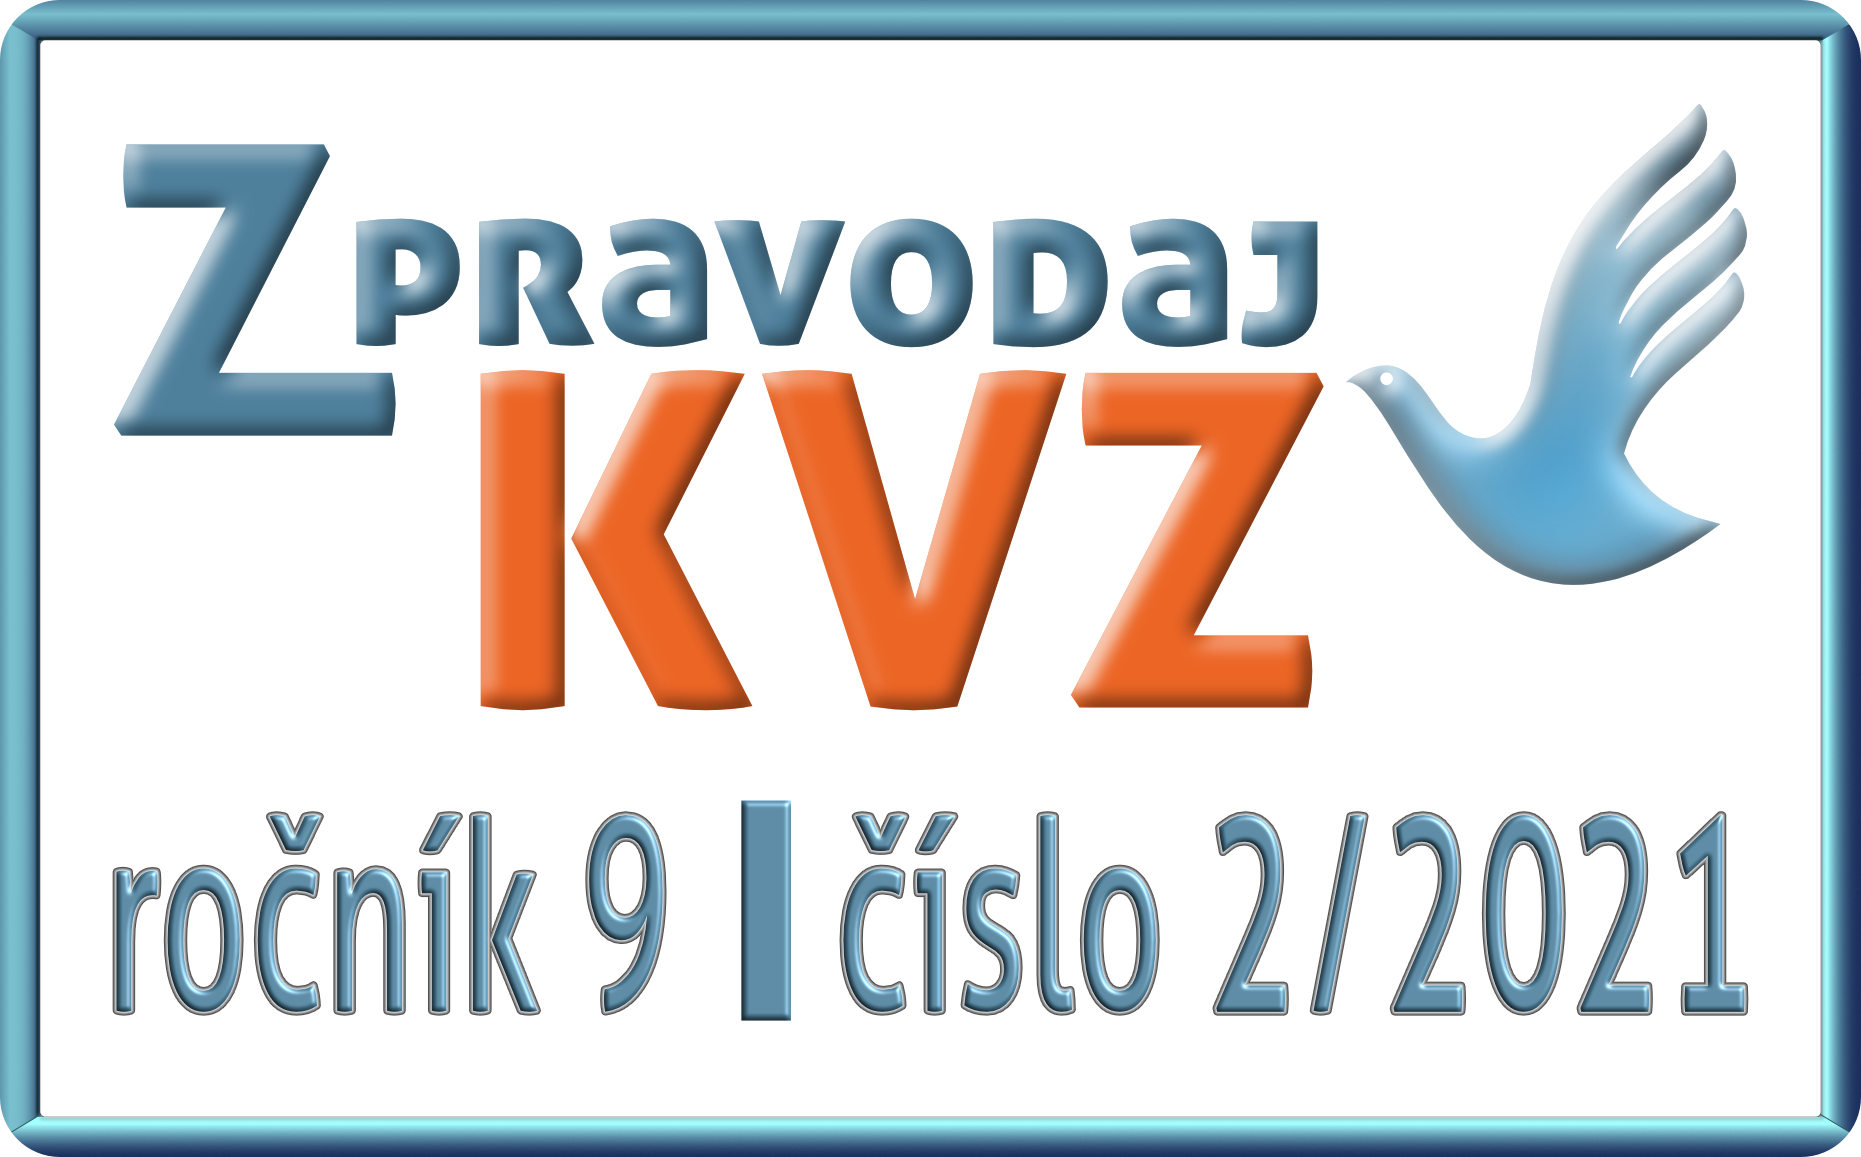 Zpravodaj_KVZ_02_2021